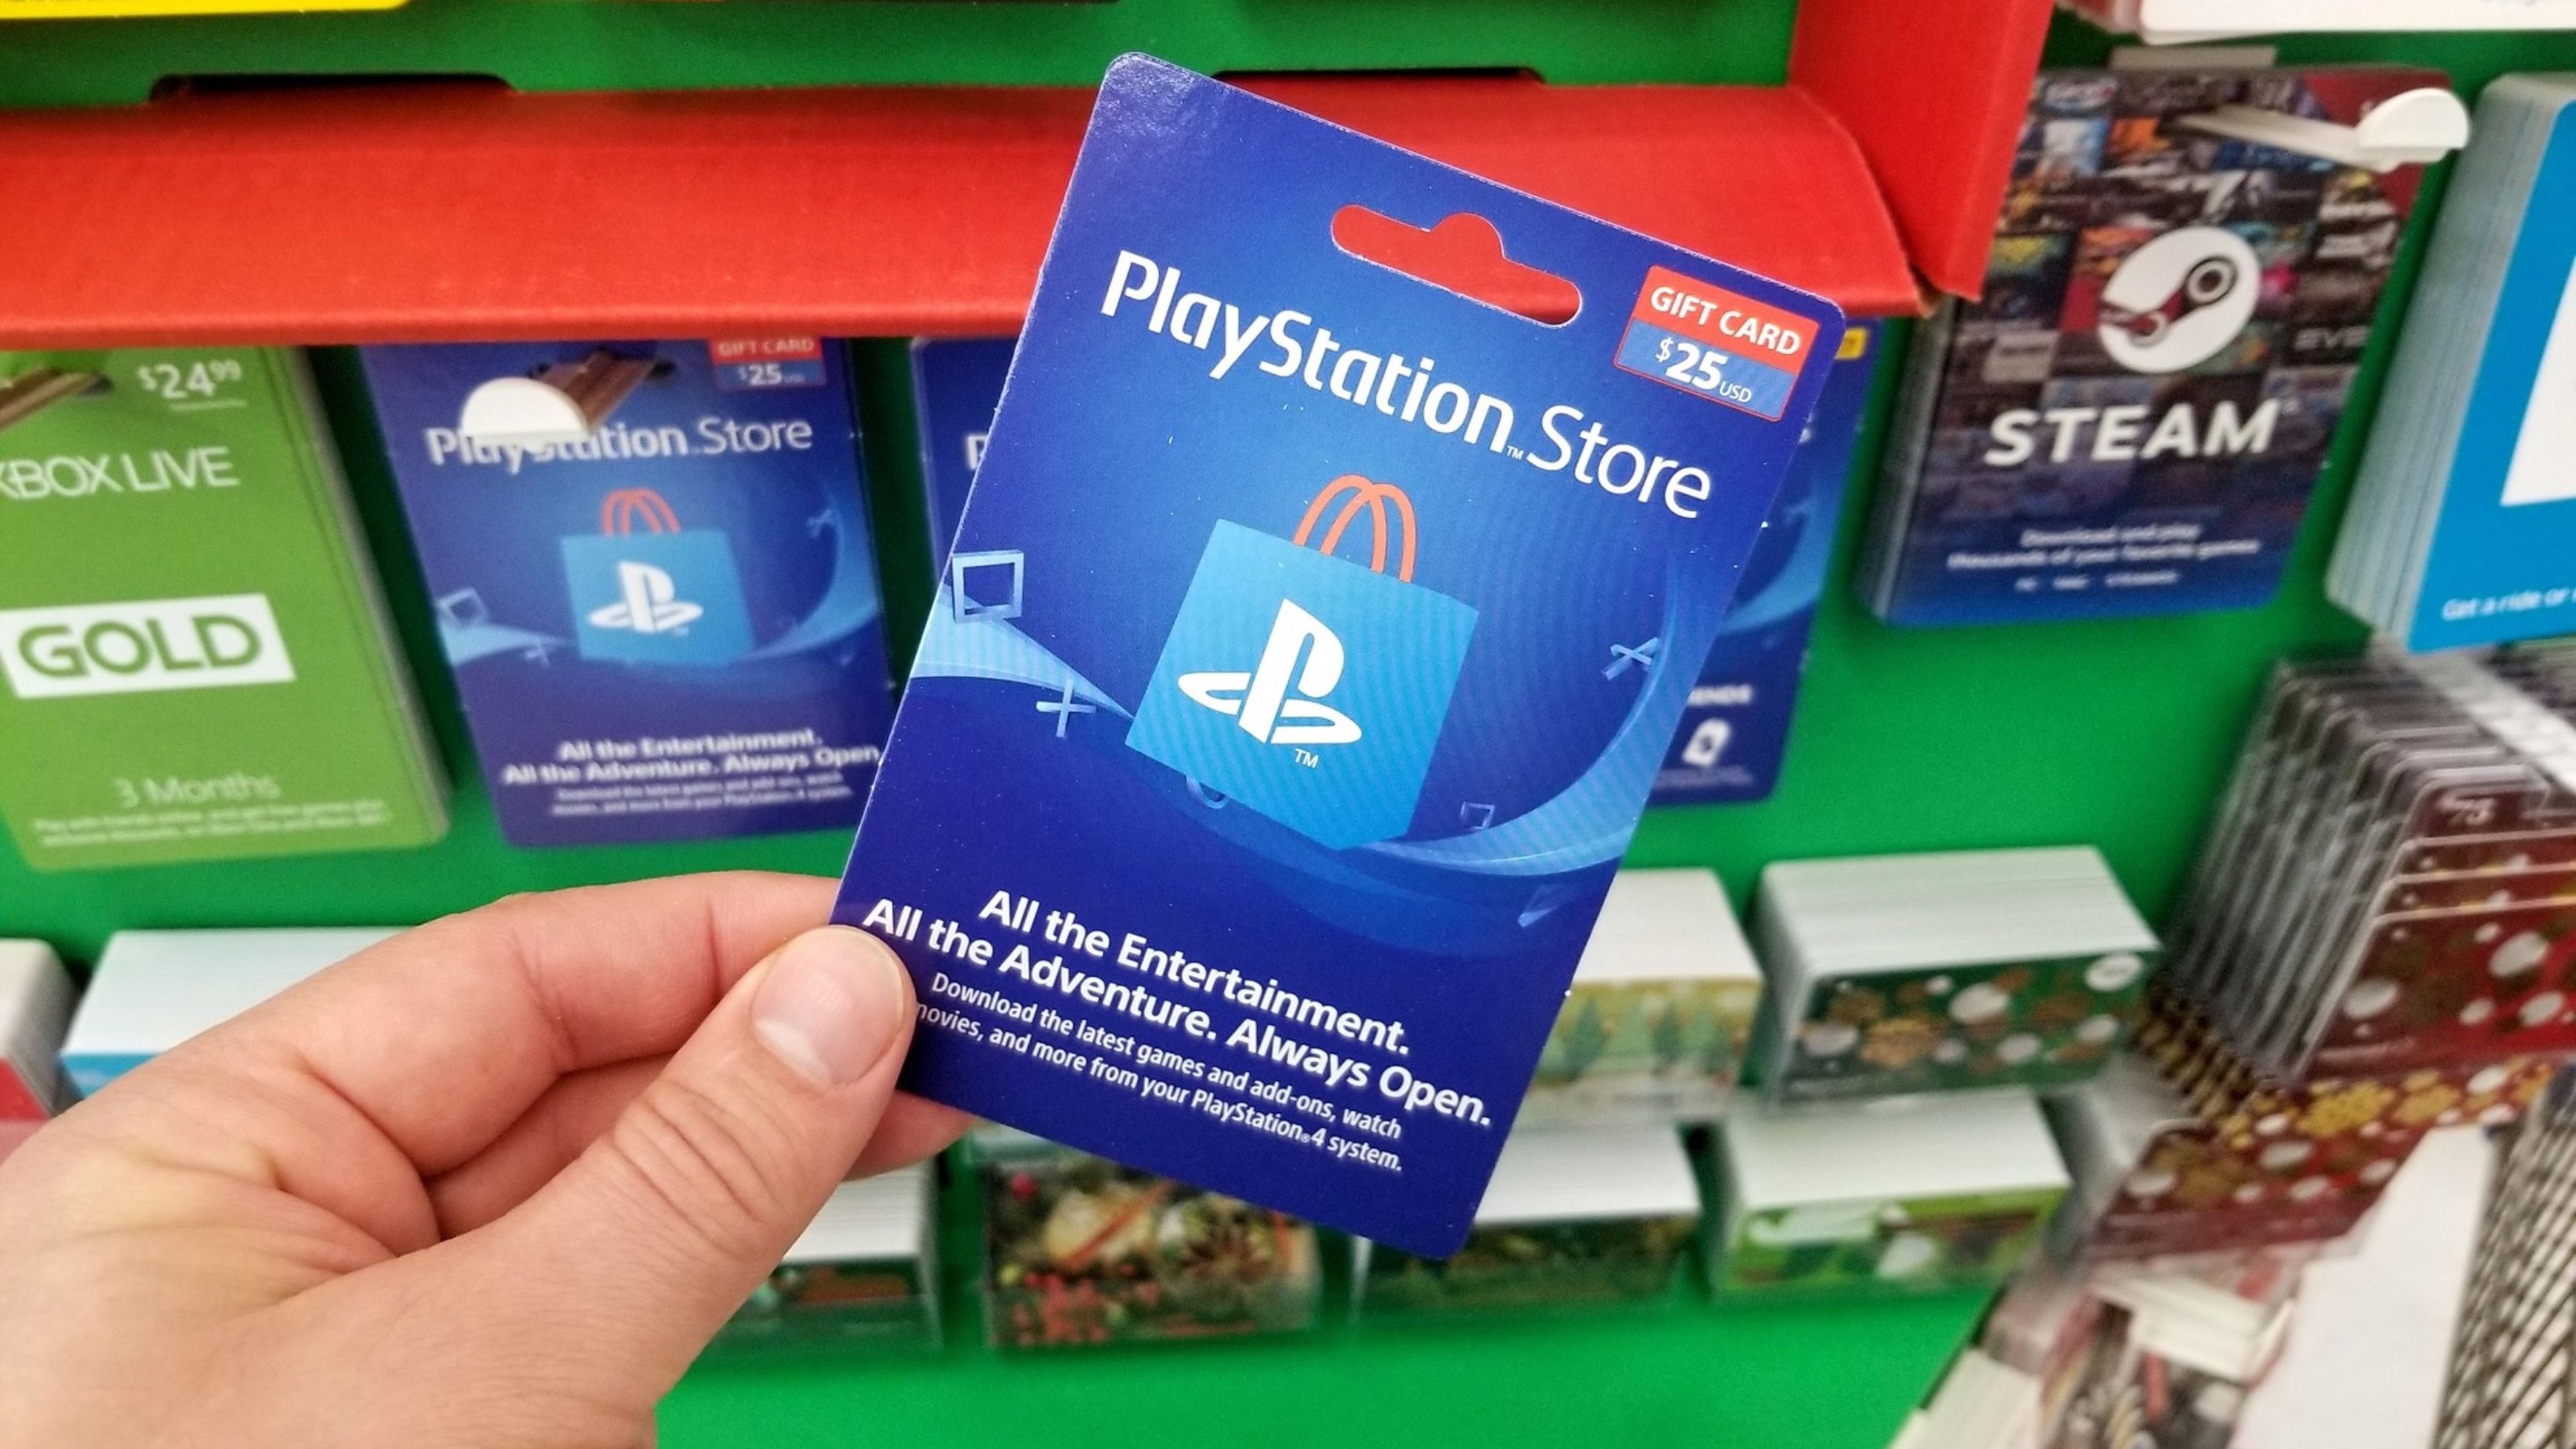 Así es la tarjeta PlayStation: te devuelve dinero para que disfrutes jugando